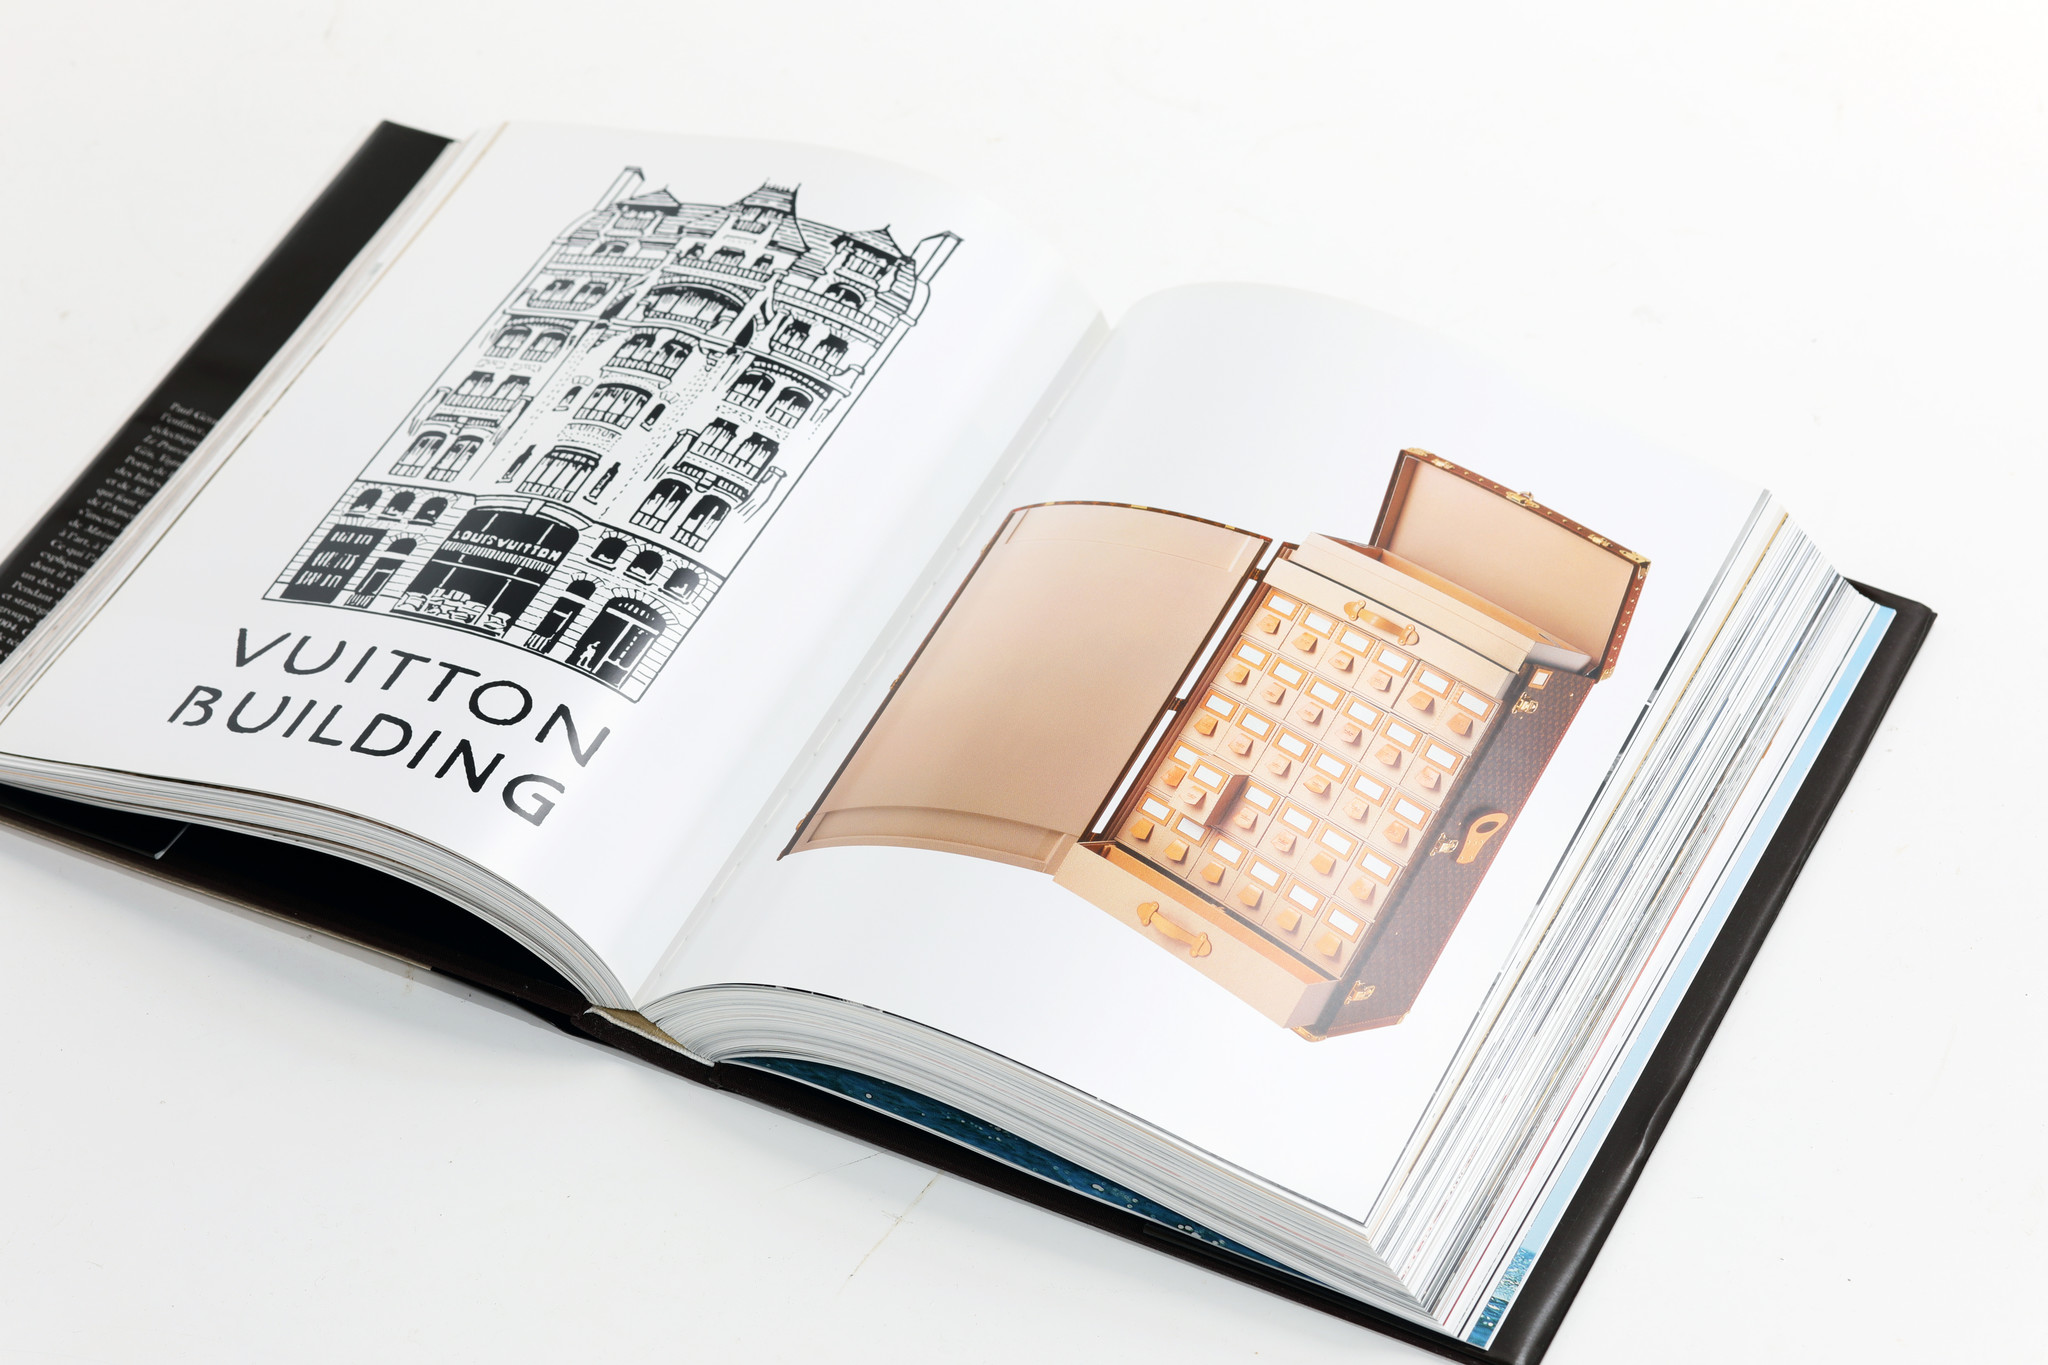 Louis Vuitton Boek "The birth of modern luxury", 2004